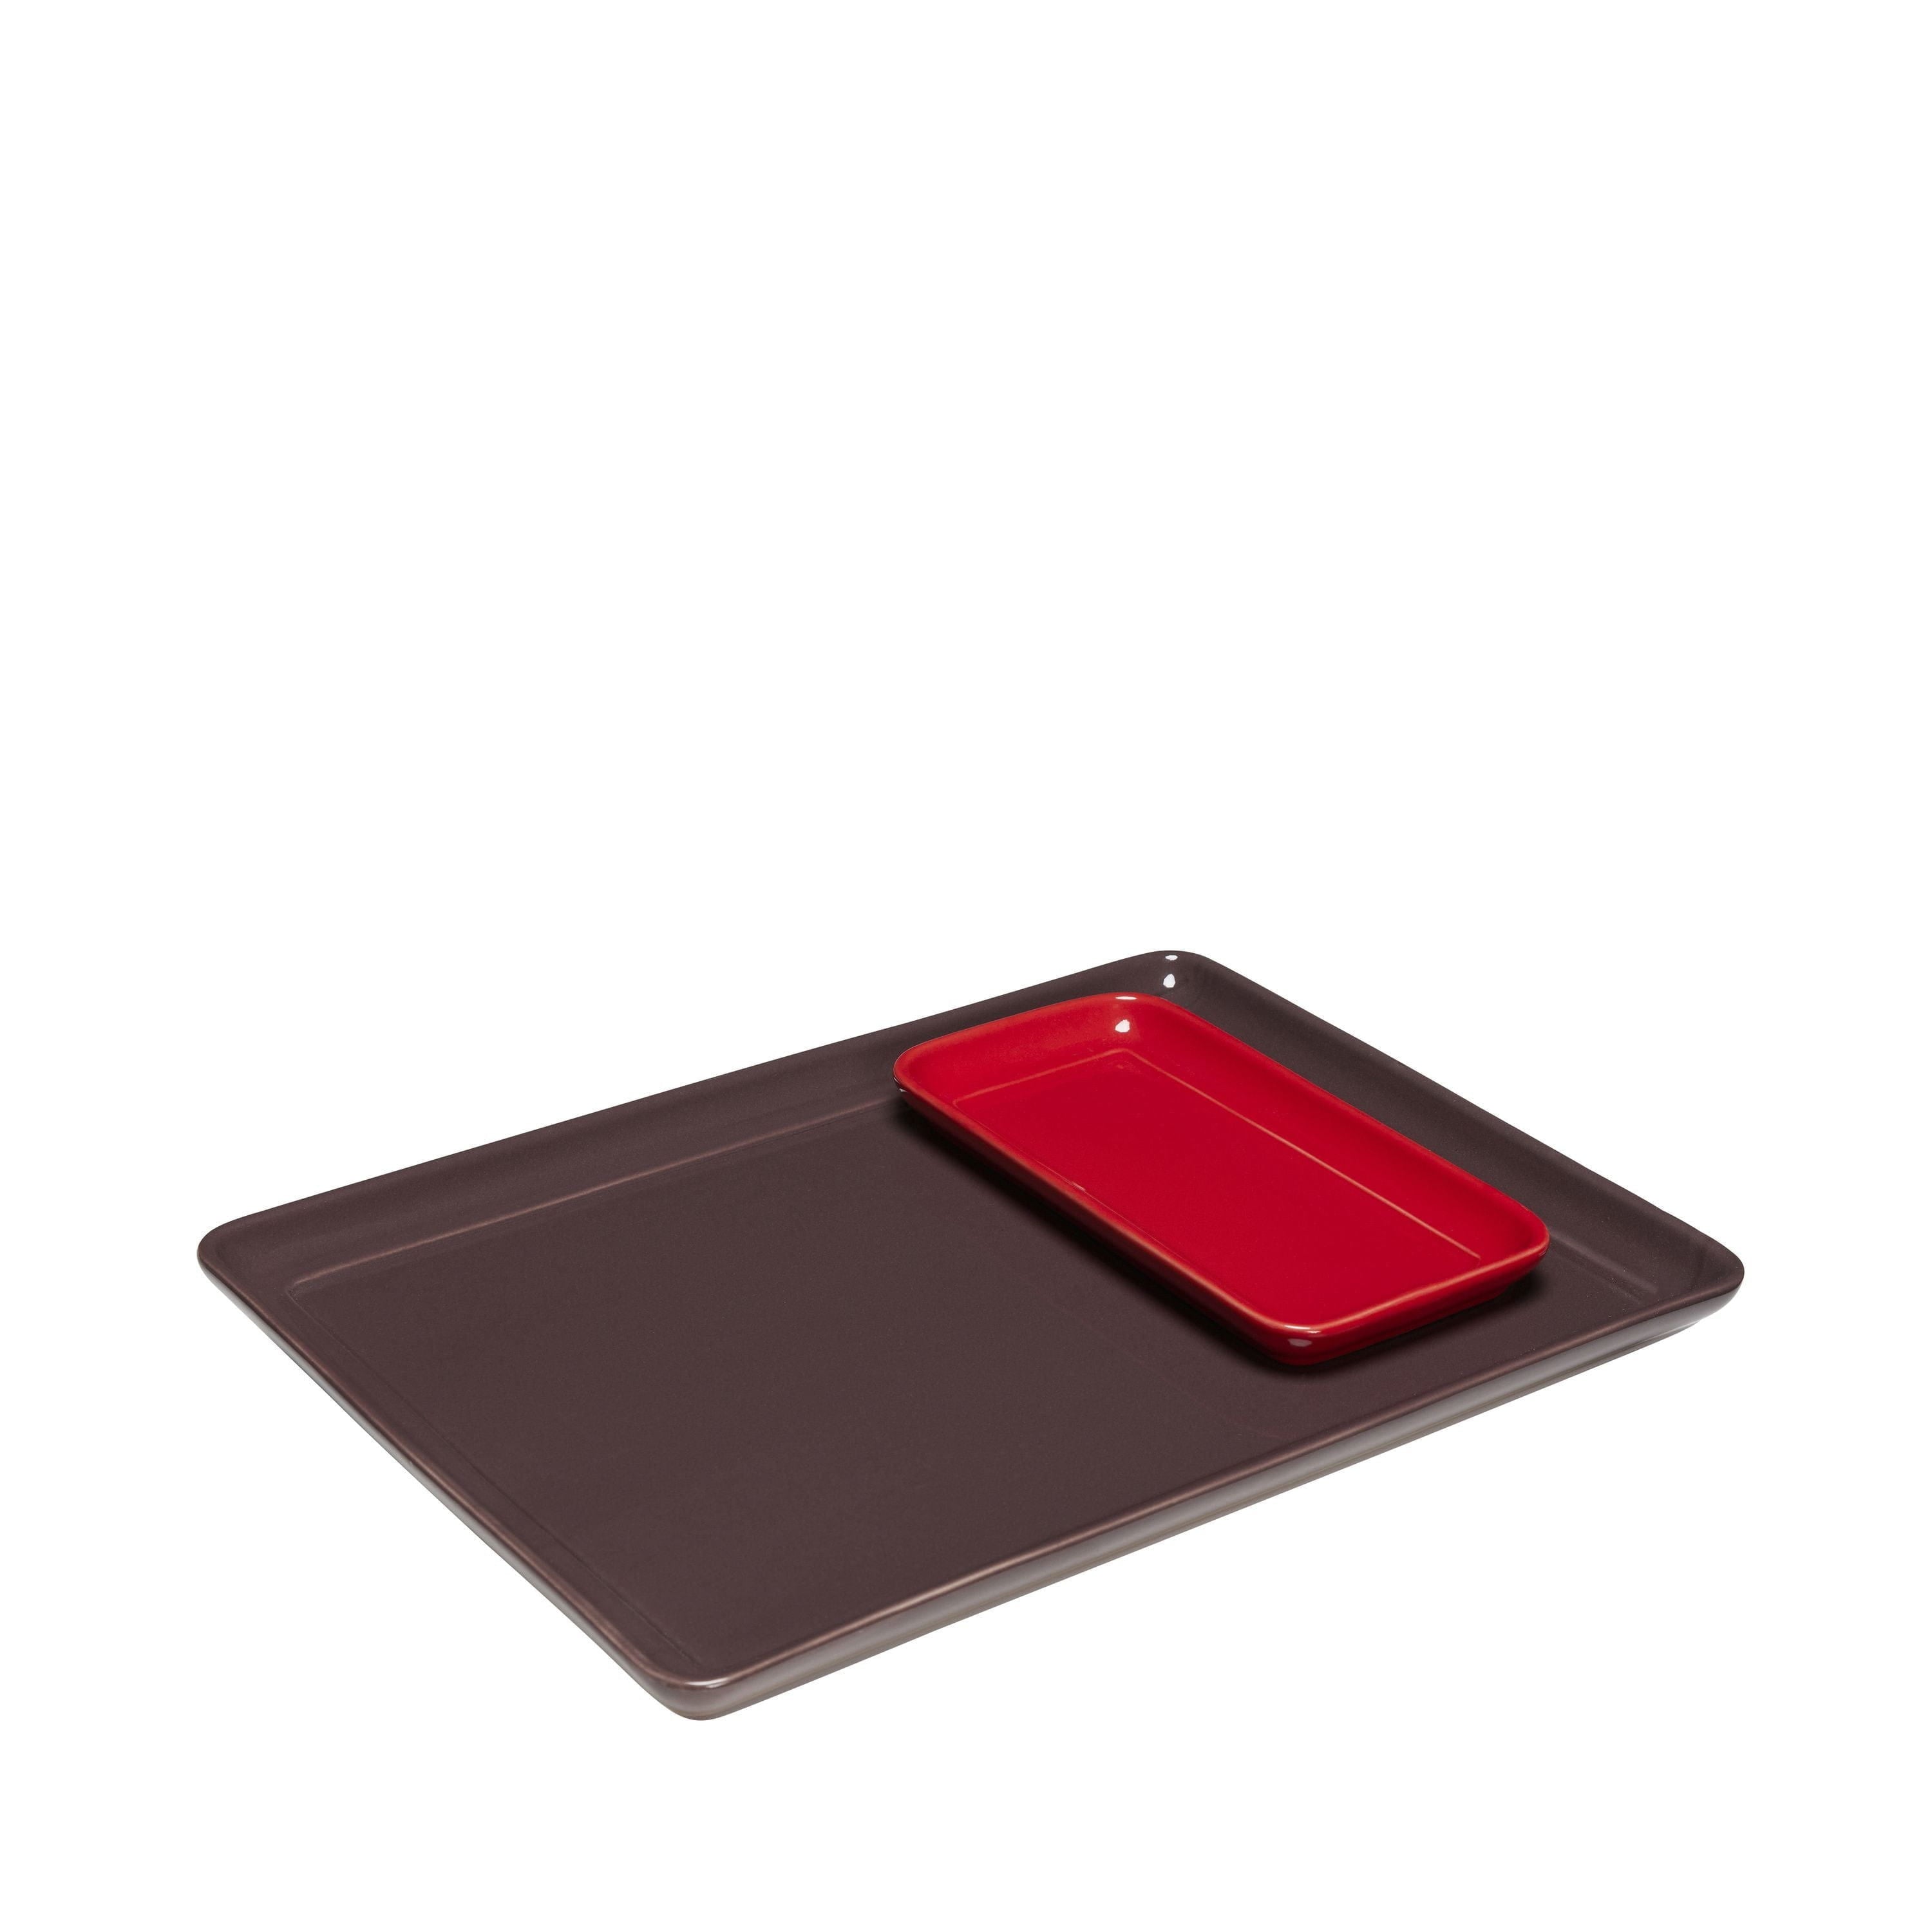 Hübsch Amare Tablett 2er-Set, Burgund/Rot